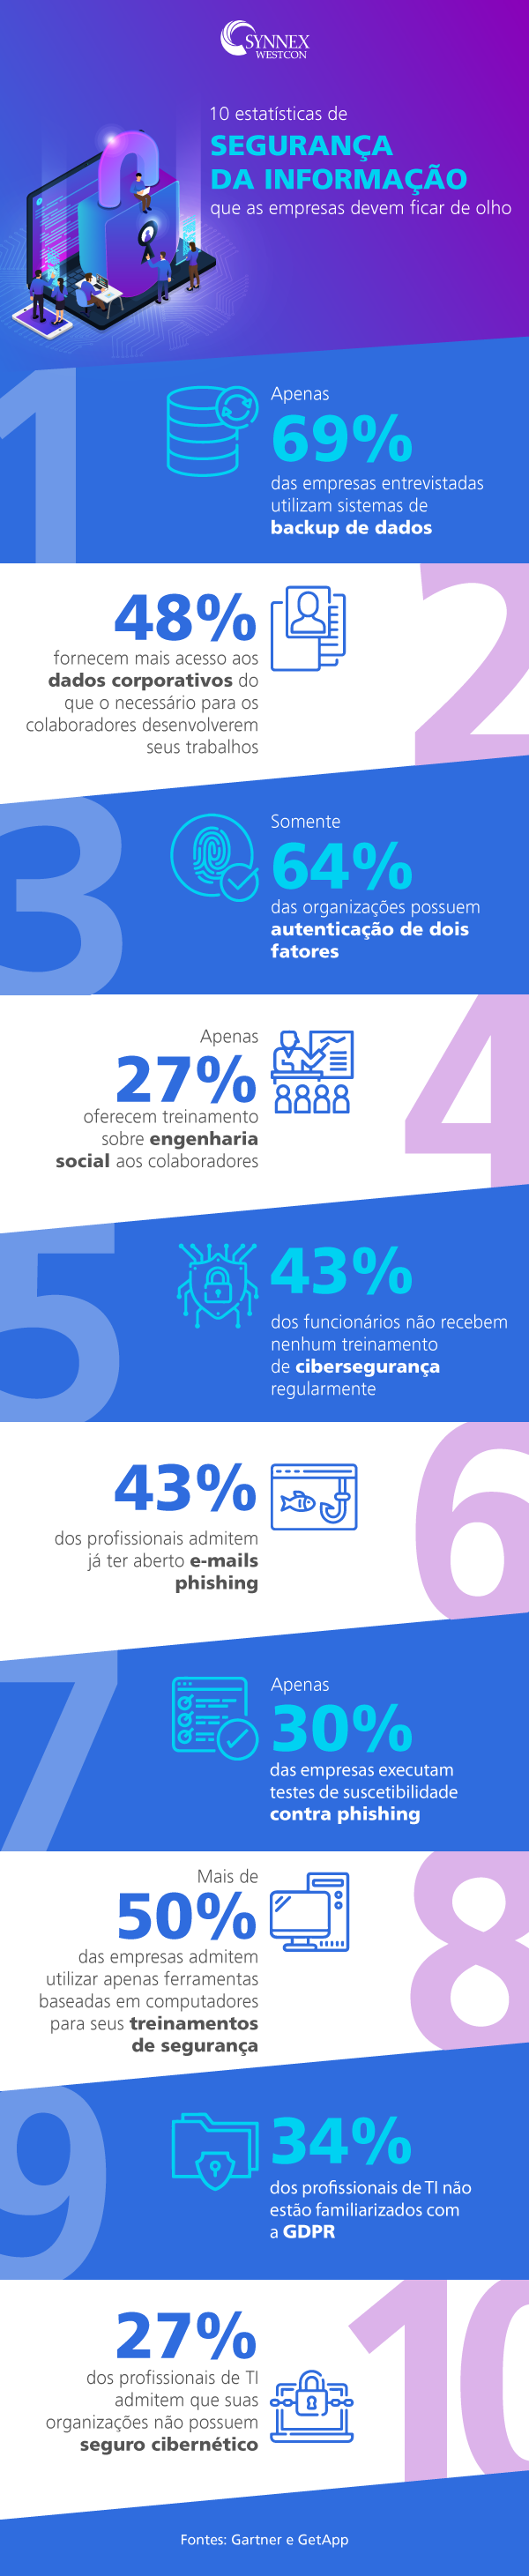 infográfico sobre estatísticas de Cibersegurança - workana blog